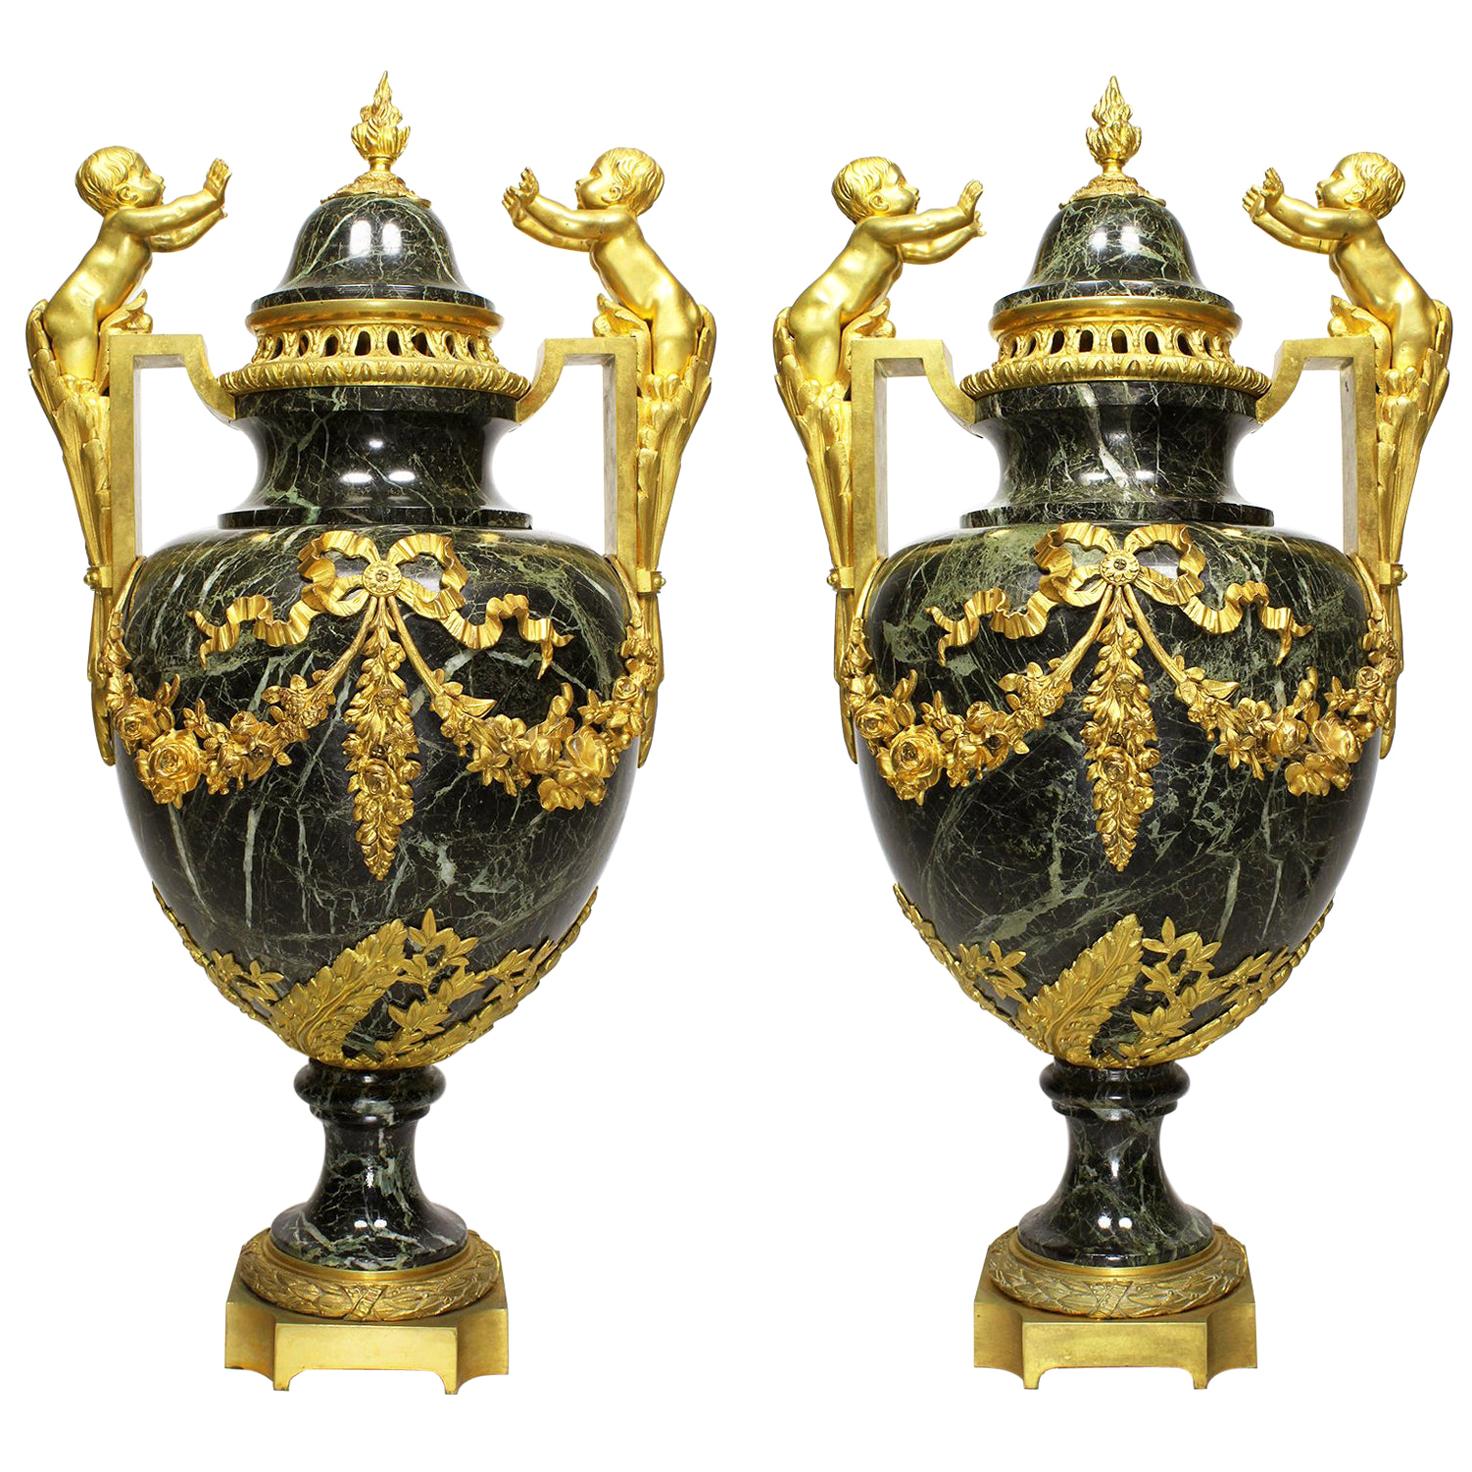 Paire d'urnes de style Louis XVI du 19e-20e siècle en bronze doré et marbre avec enfants